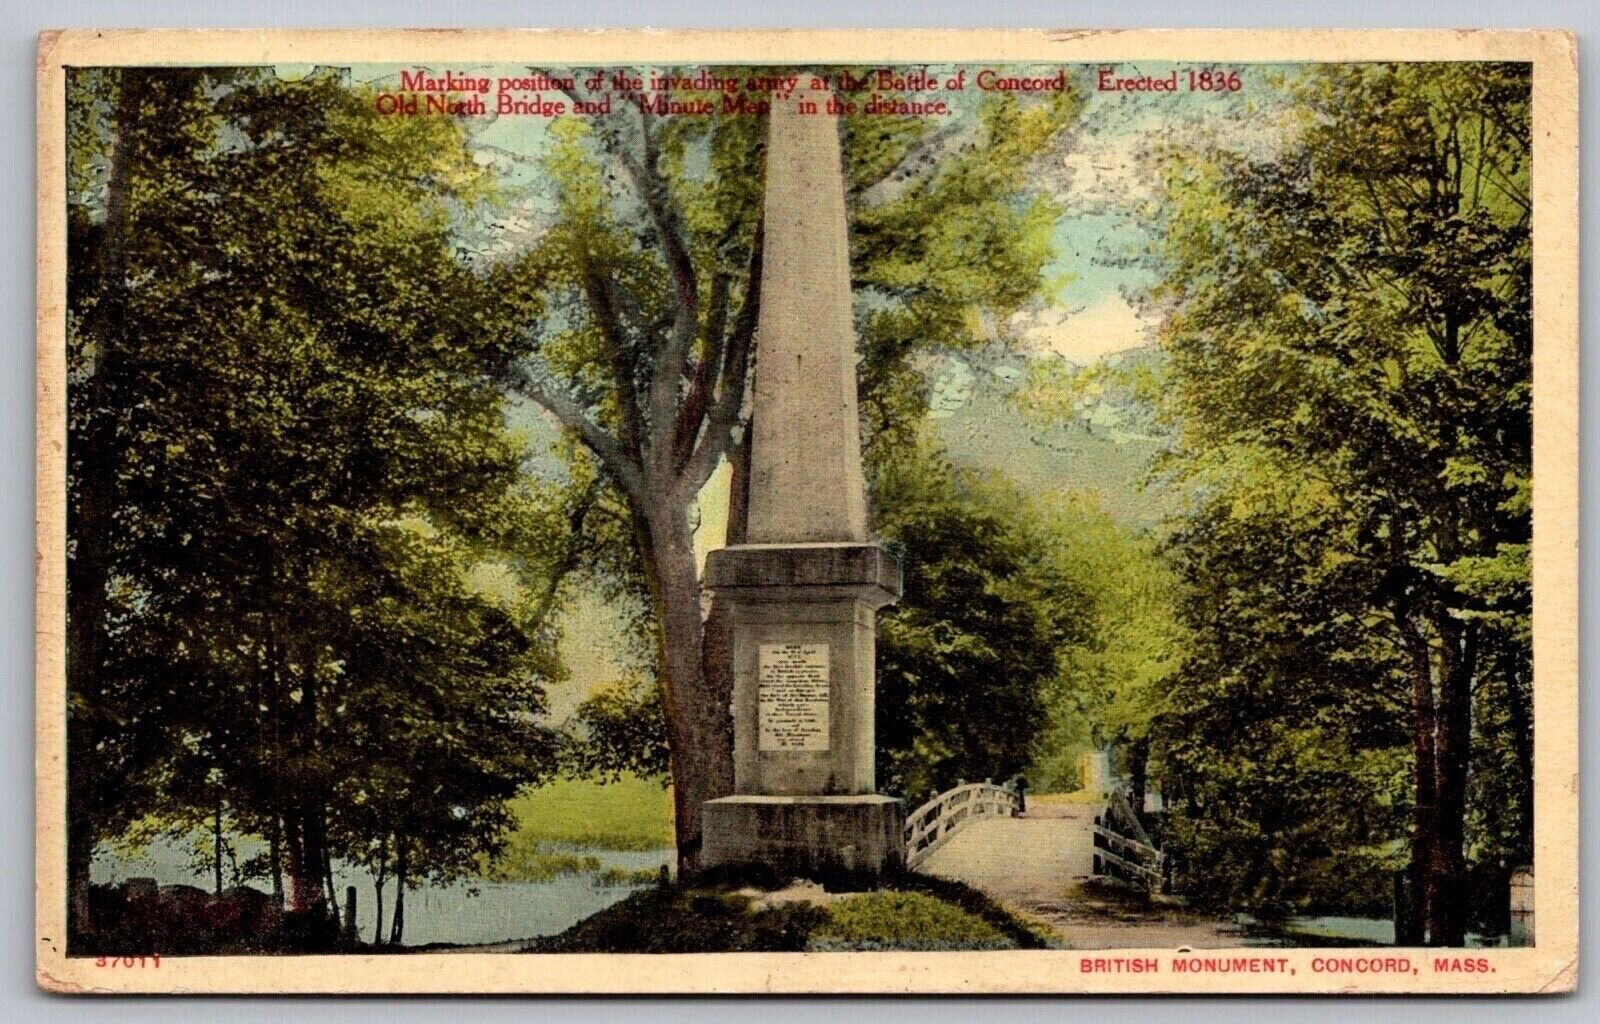 Battle Concord Old North Bridge Minute Men Statue Monument Sculpture PM Postcard